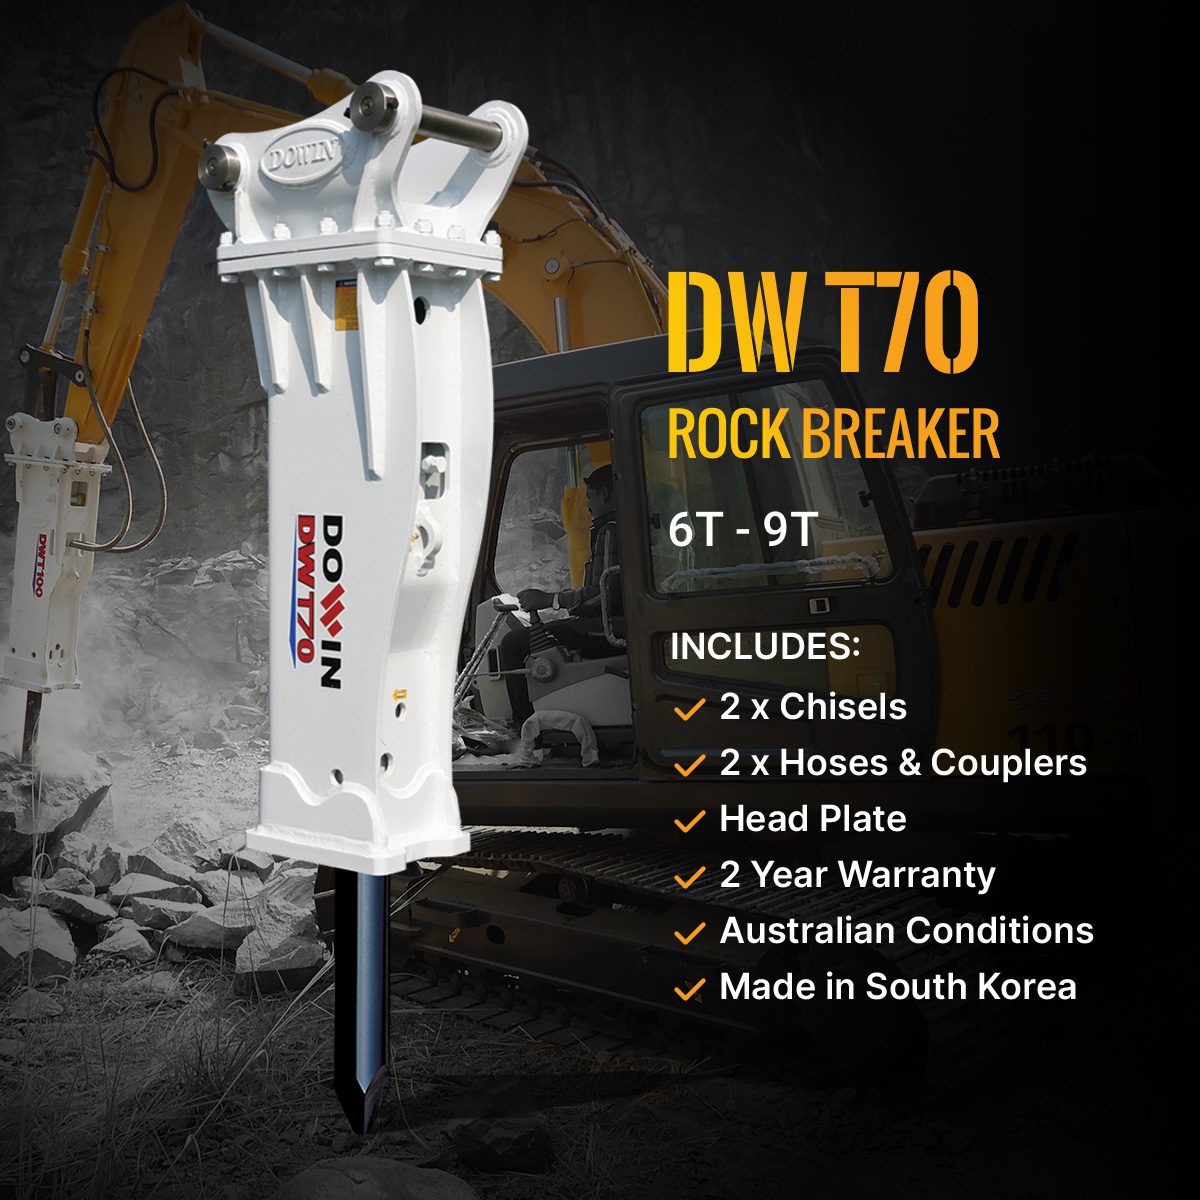 Dowin DWT70 Rock Breaker